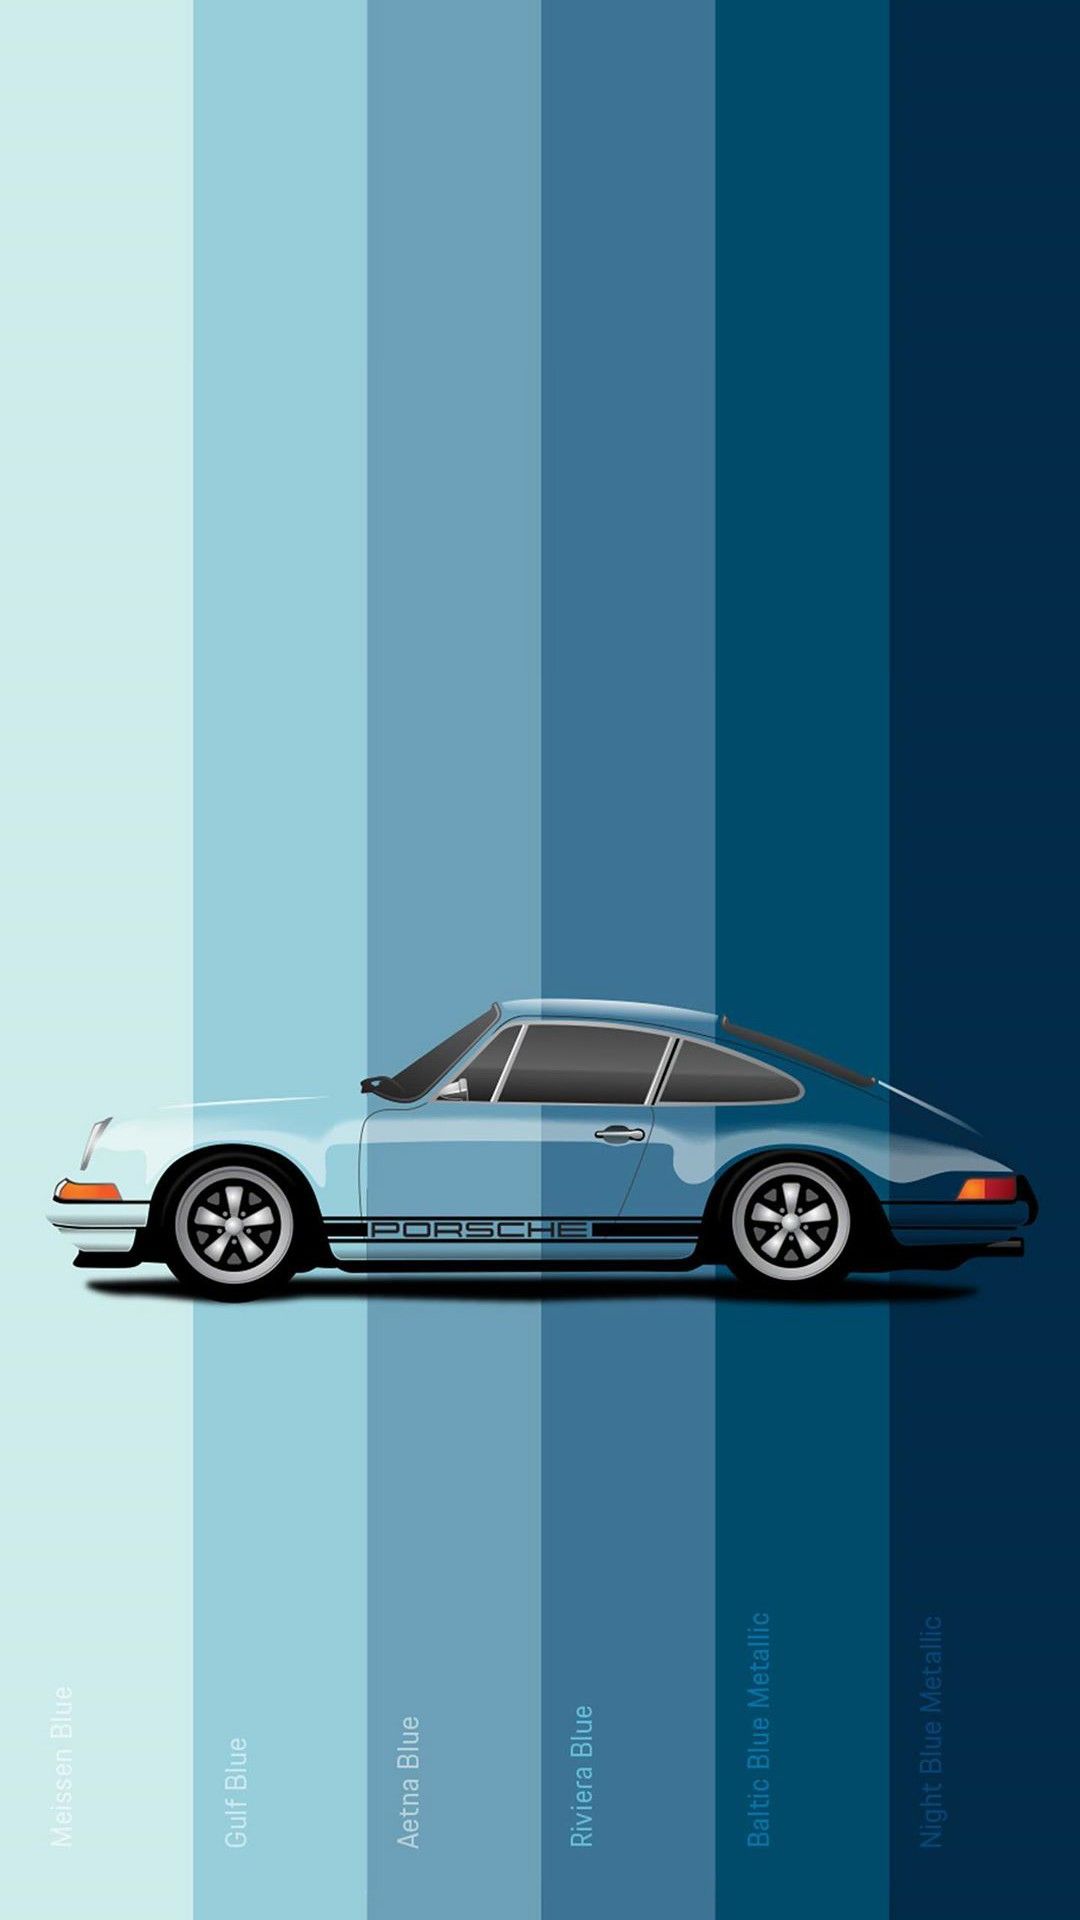 Blue Porsche Wallpaper 1080X1920. Car wallpaper, Car iphone wallpaper, Art cars